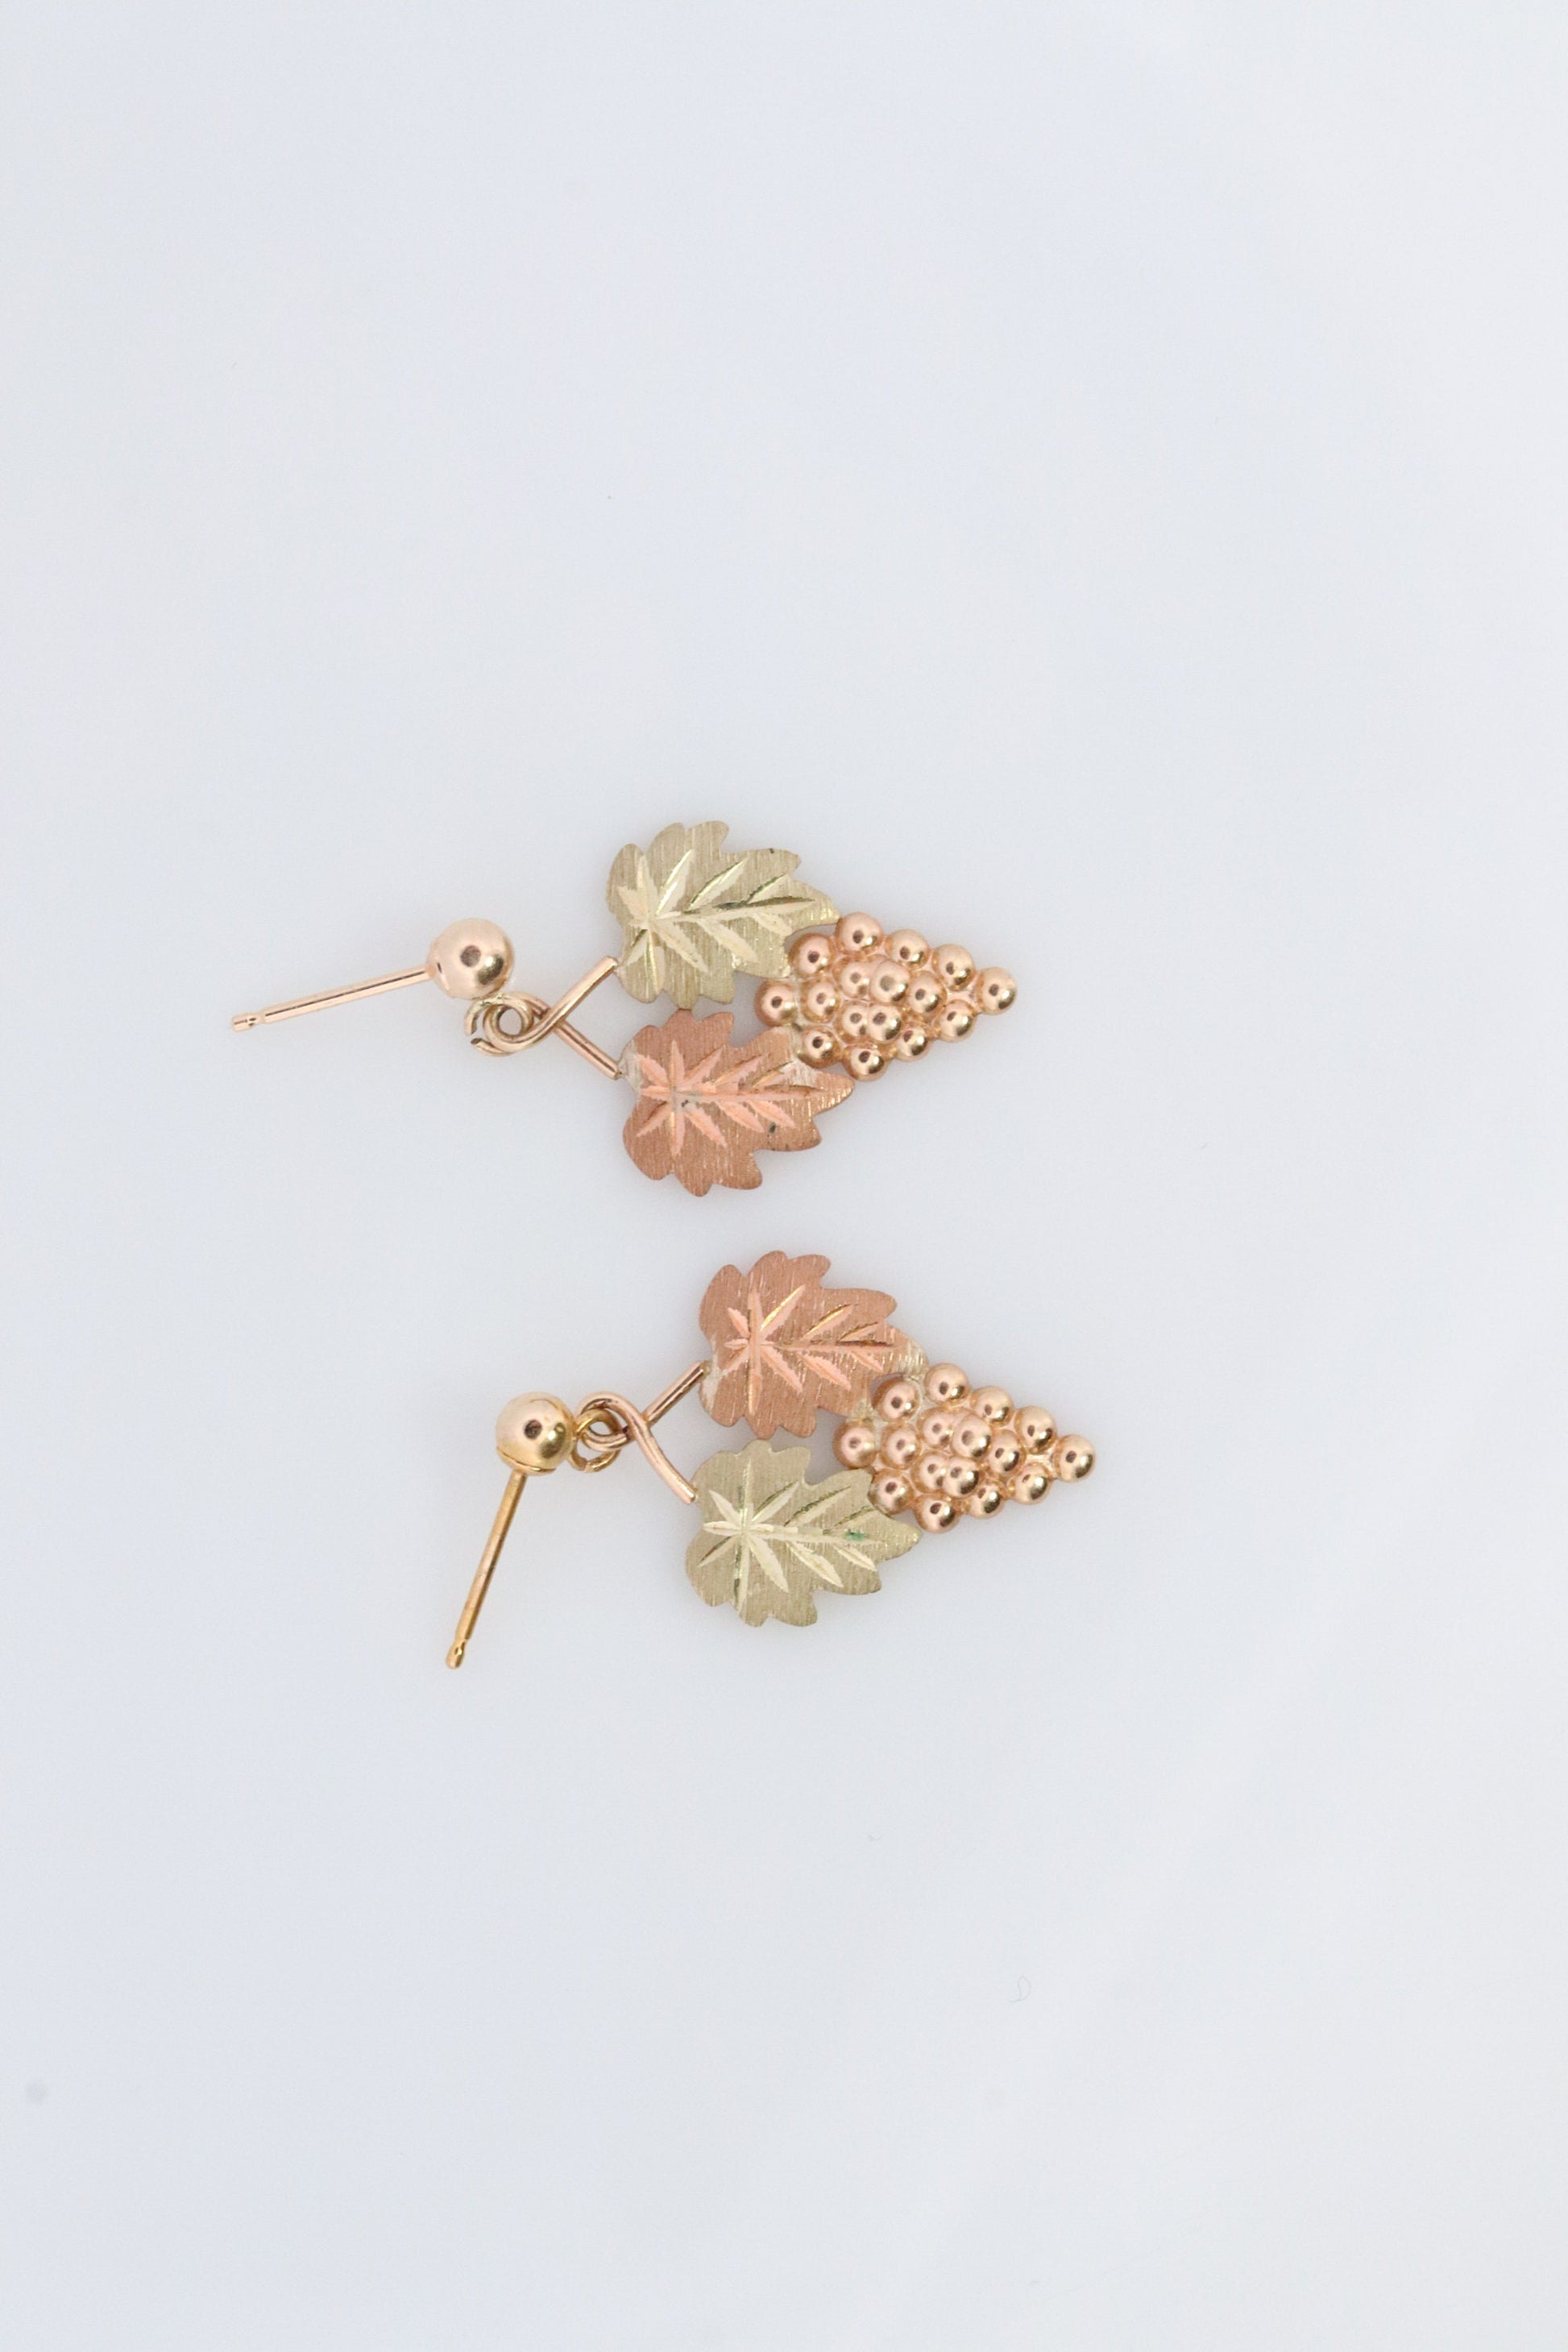 Black Hills Gold Dangle earrings. Black Hills Vine Leaves Dangle earrings